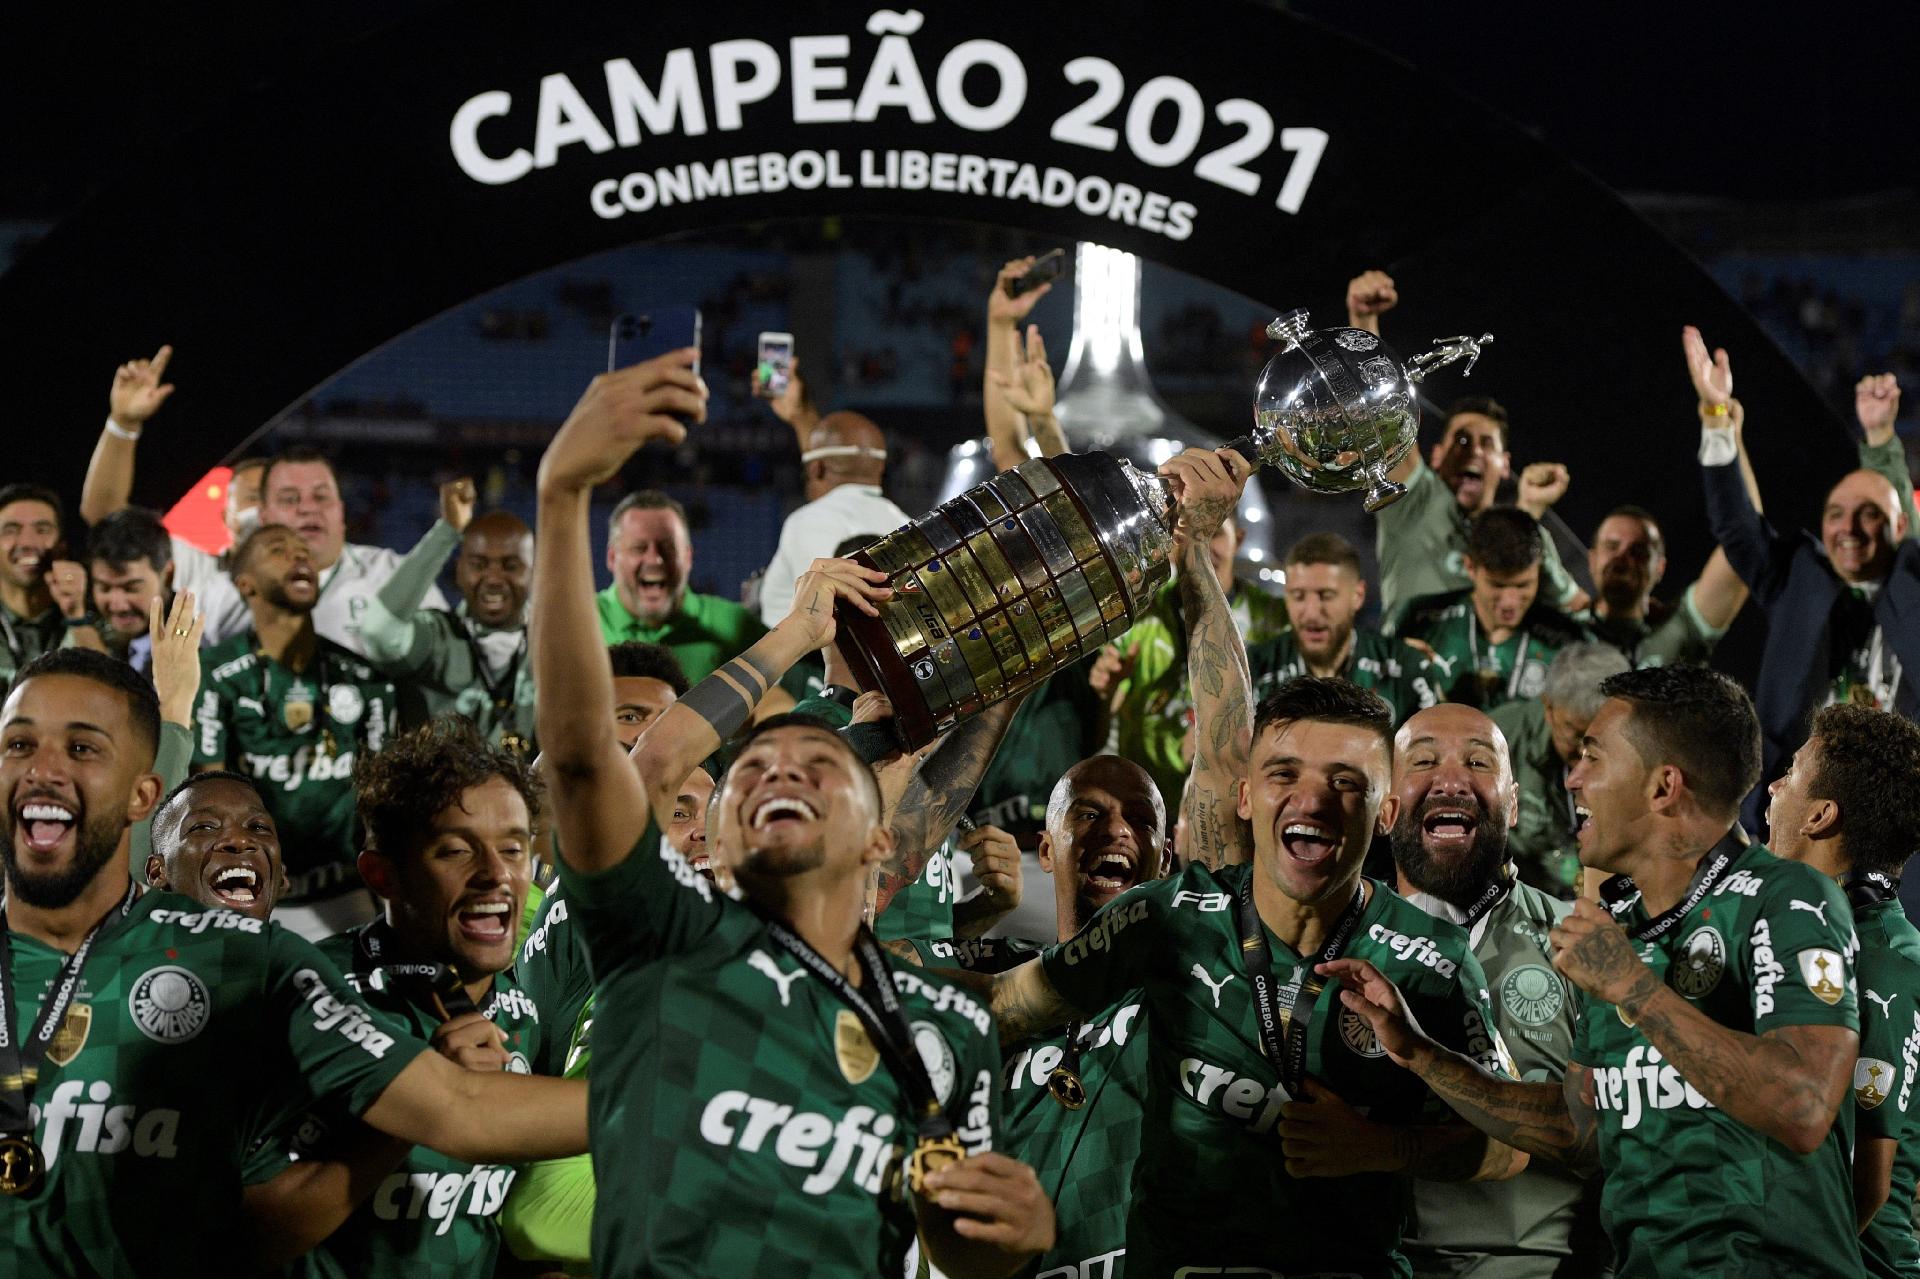 Palmeiras, Corinthians, Flamengo: os times brasileiros com maior avaliação  de mercado em 2021 – Money Times